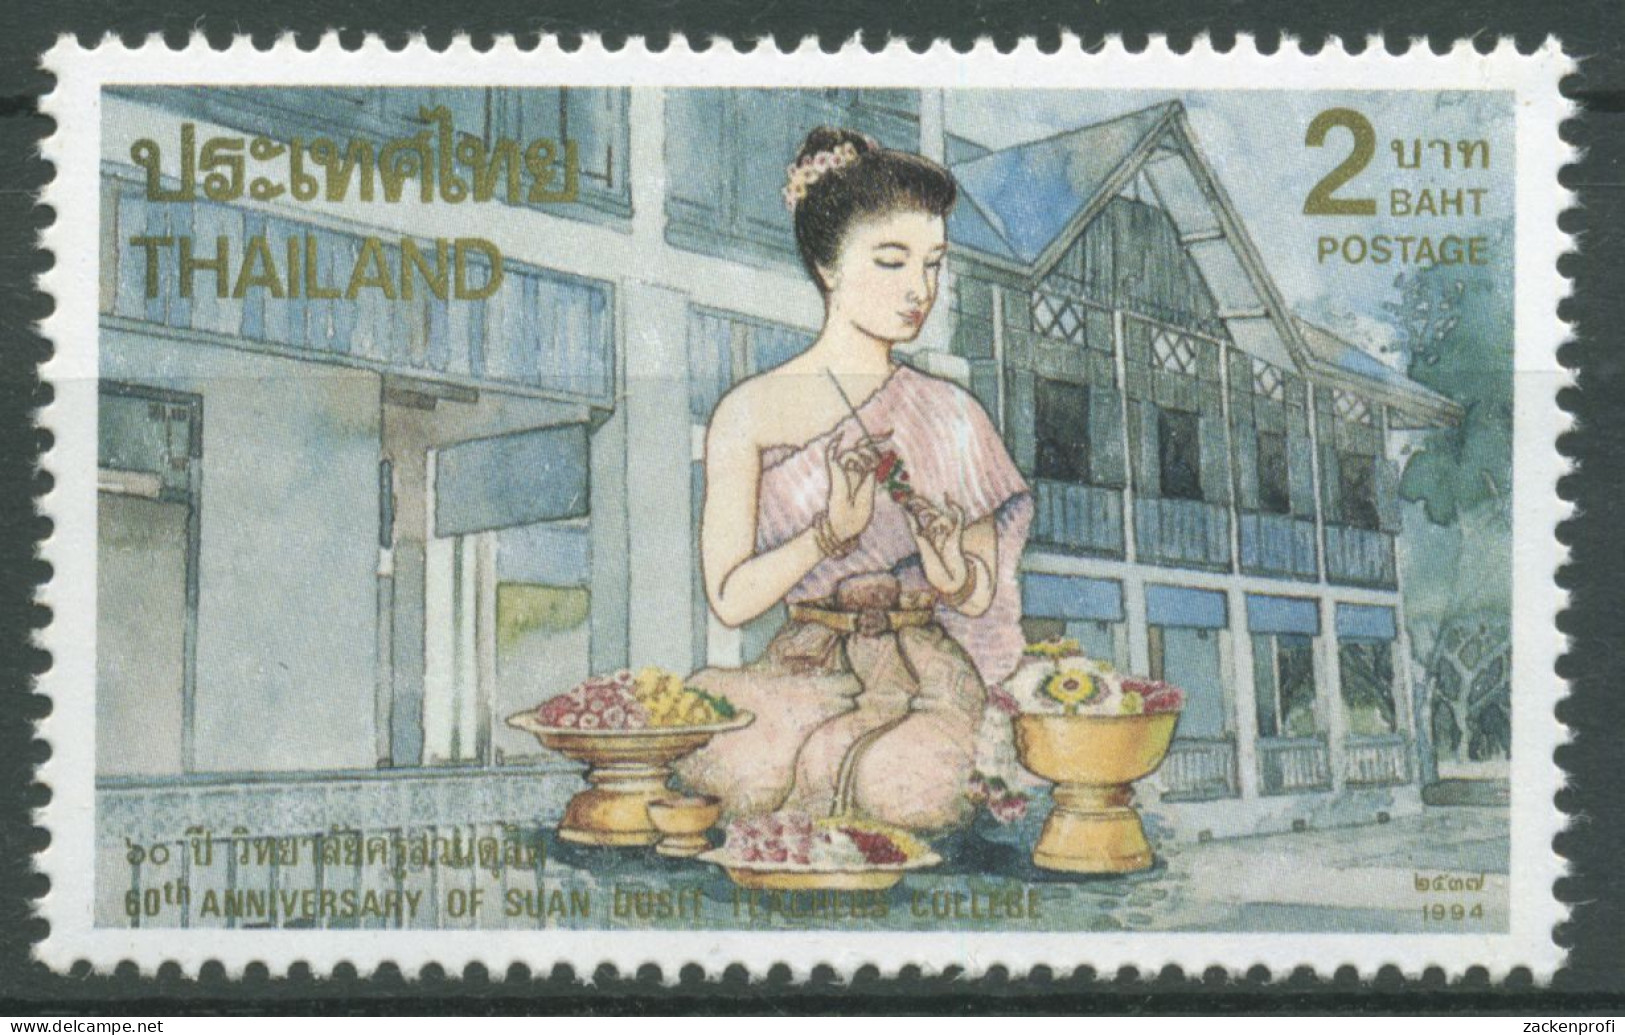 Thailand 1994 Suan-Dusit-Lehrerkolleg 1616 Postfrisch - Thailand